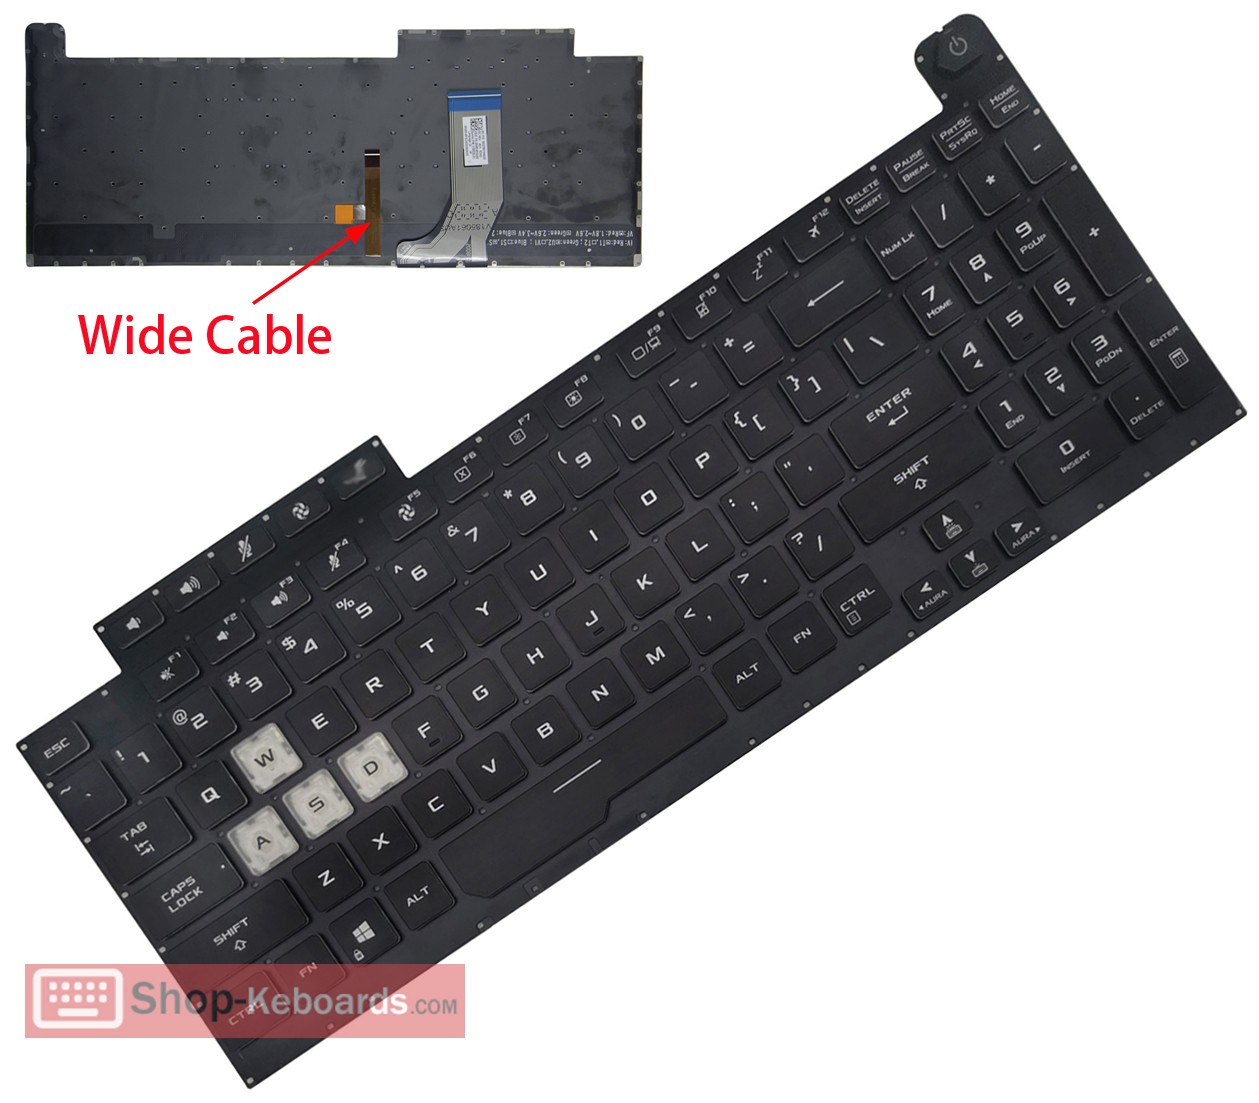 Asus 0KNR0-661MRU00  Keyboard replacement